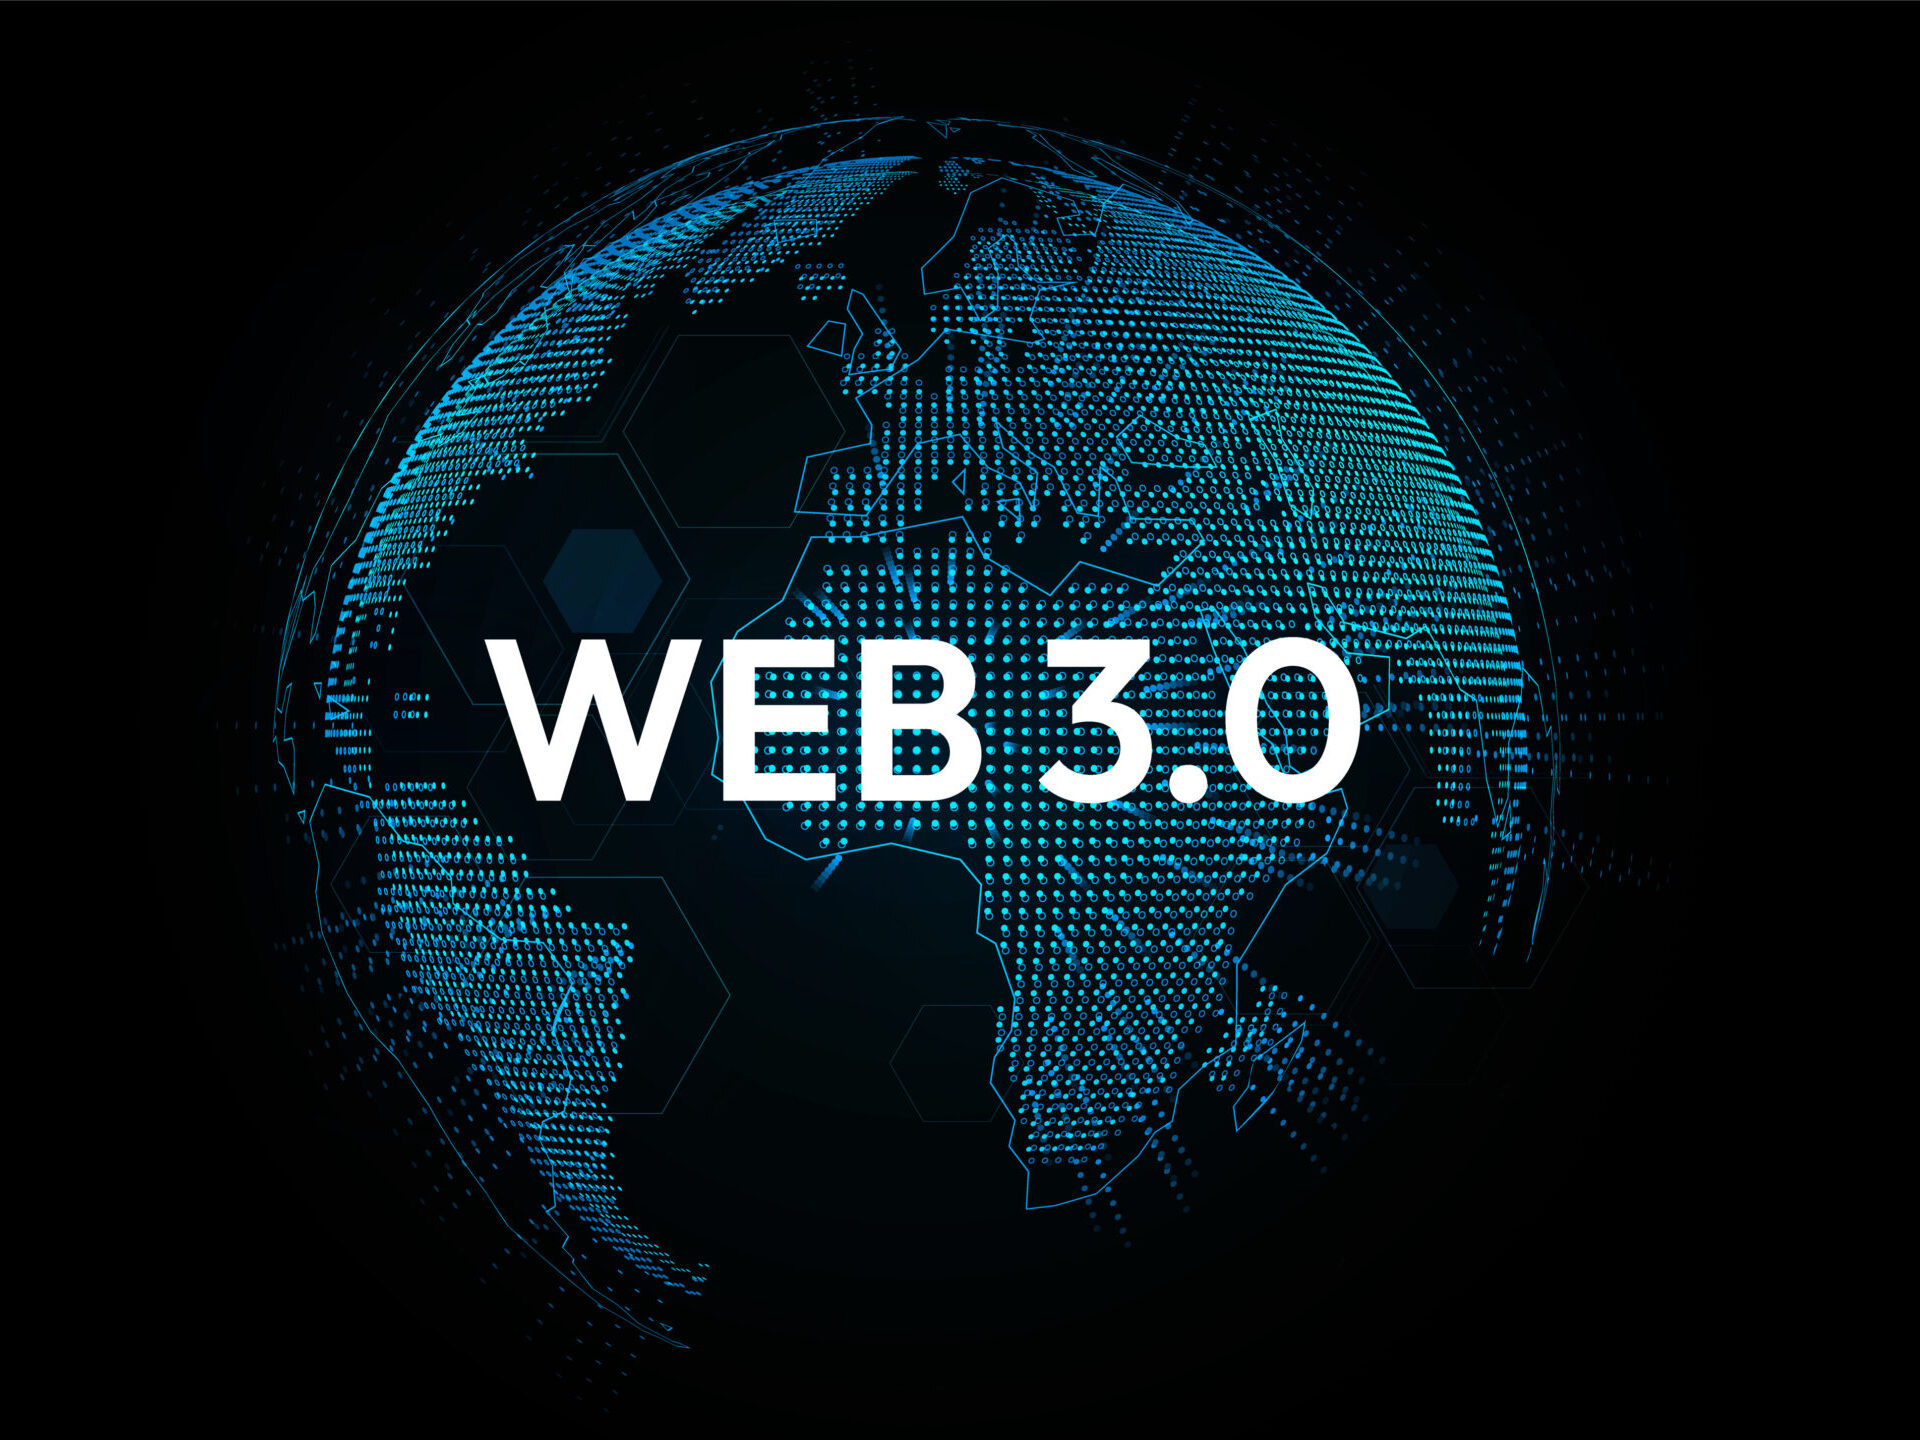 ブロックチェーンの仕組みとは？Web3.0というデジタル変革の流れについて